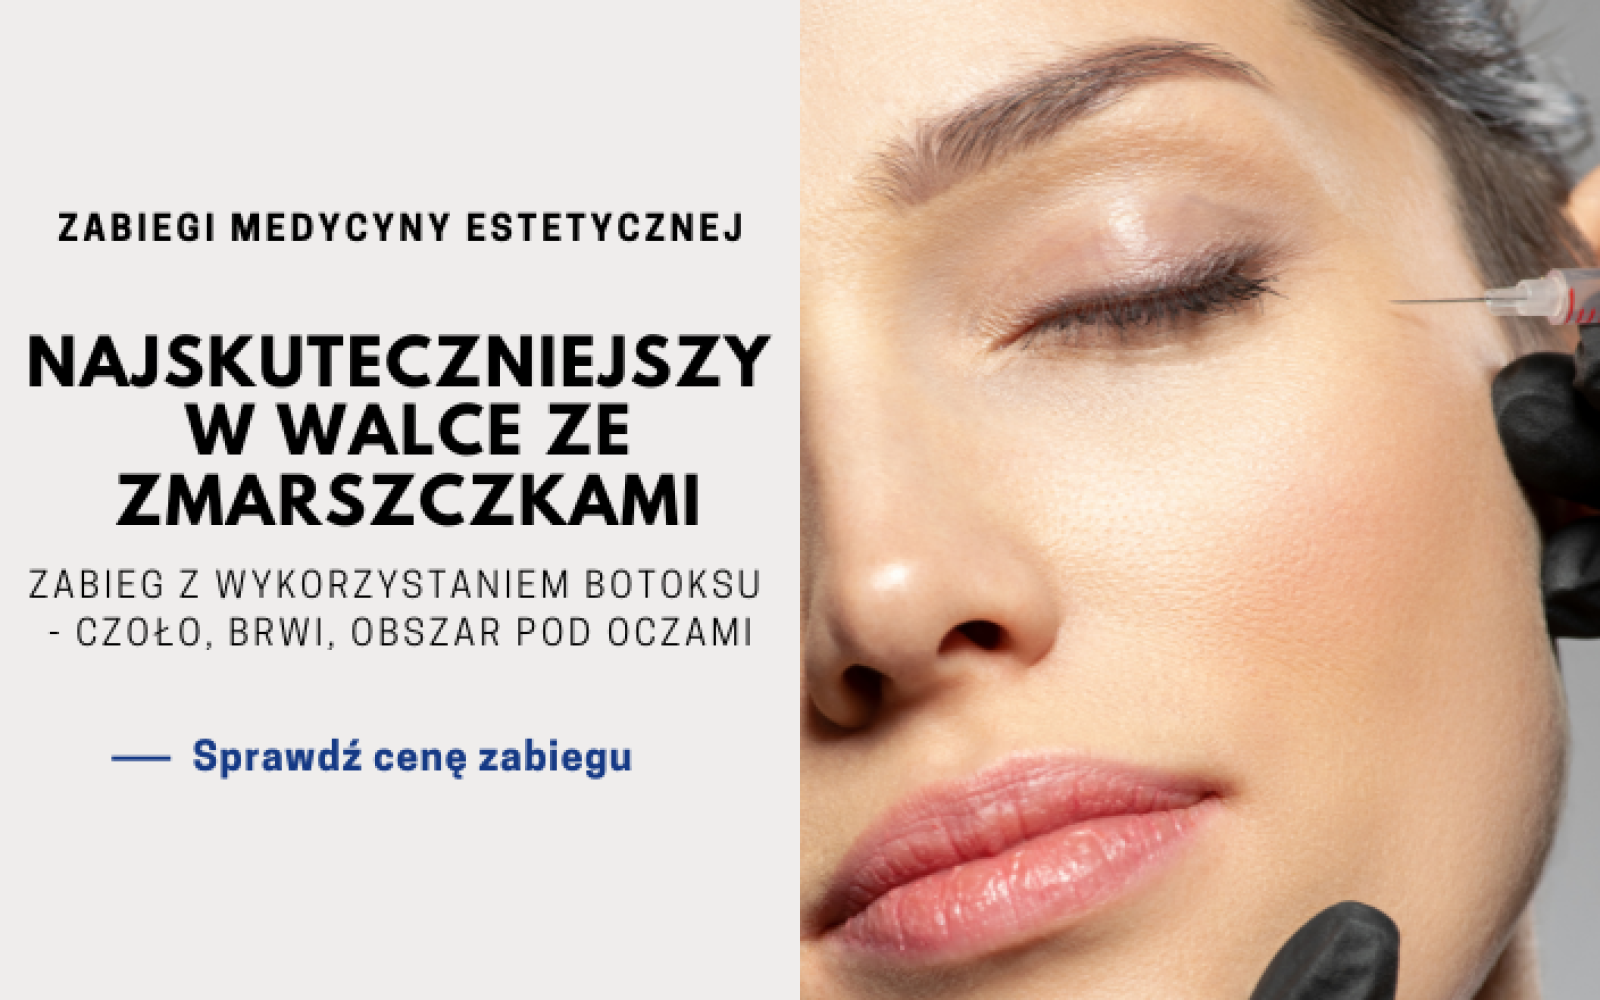  Botoks na czoło i pod oczy - usuwanie zmarszczek botoxem w Derm-Estetyka